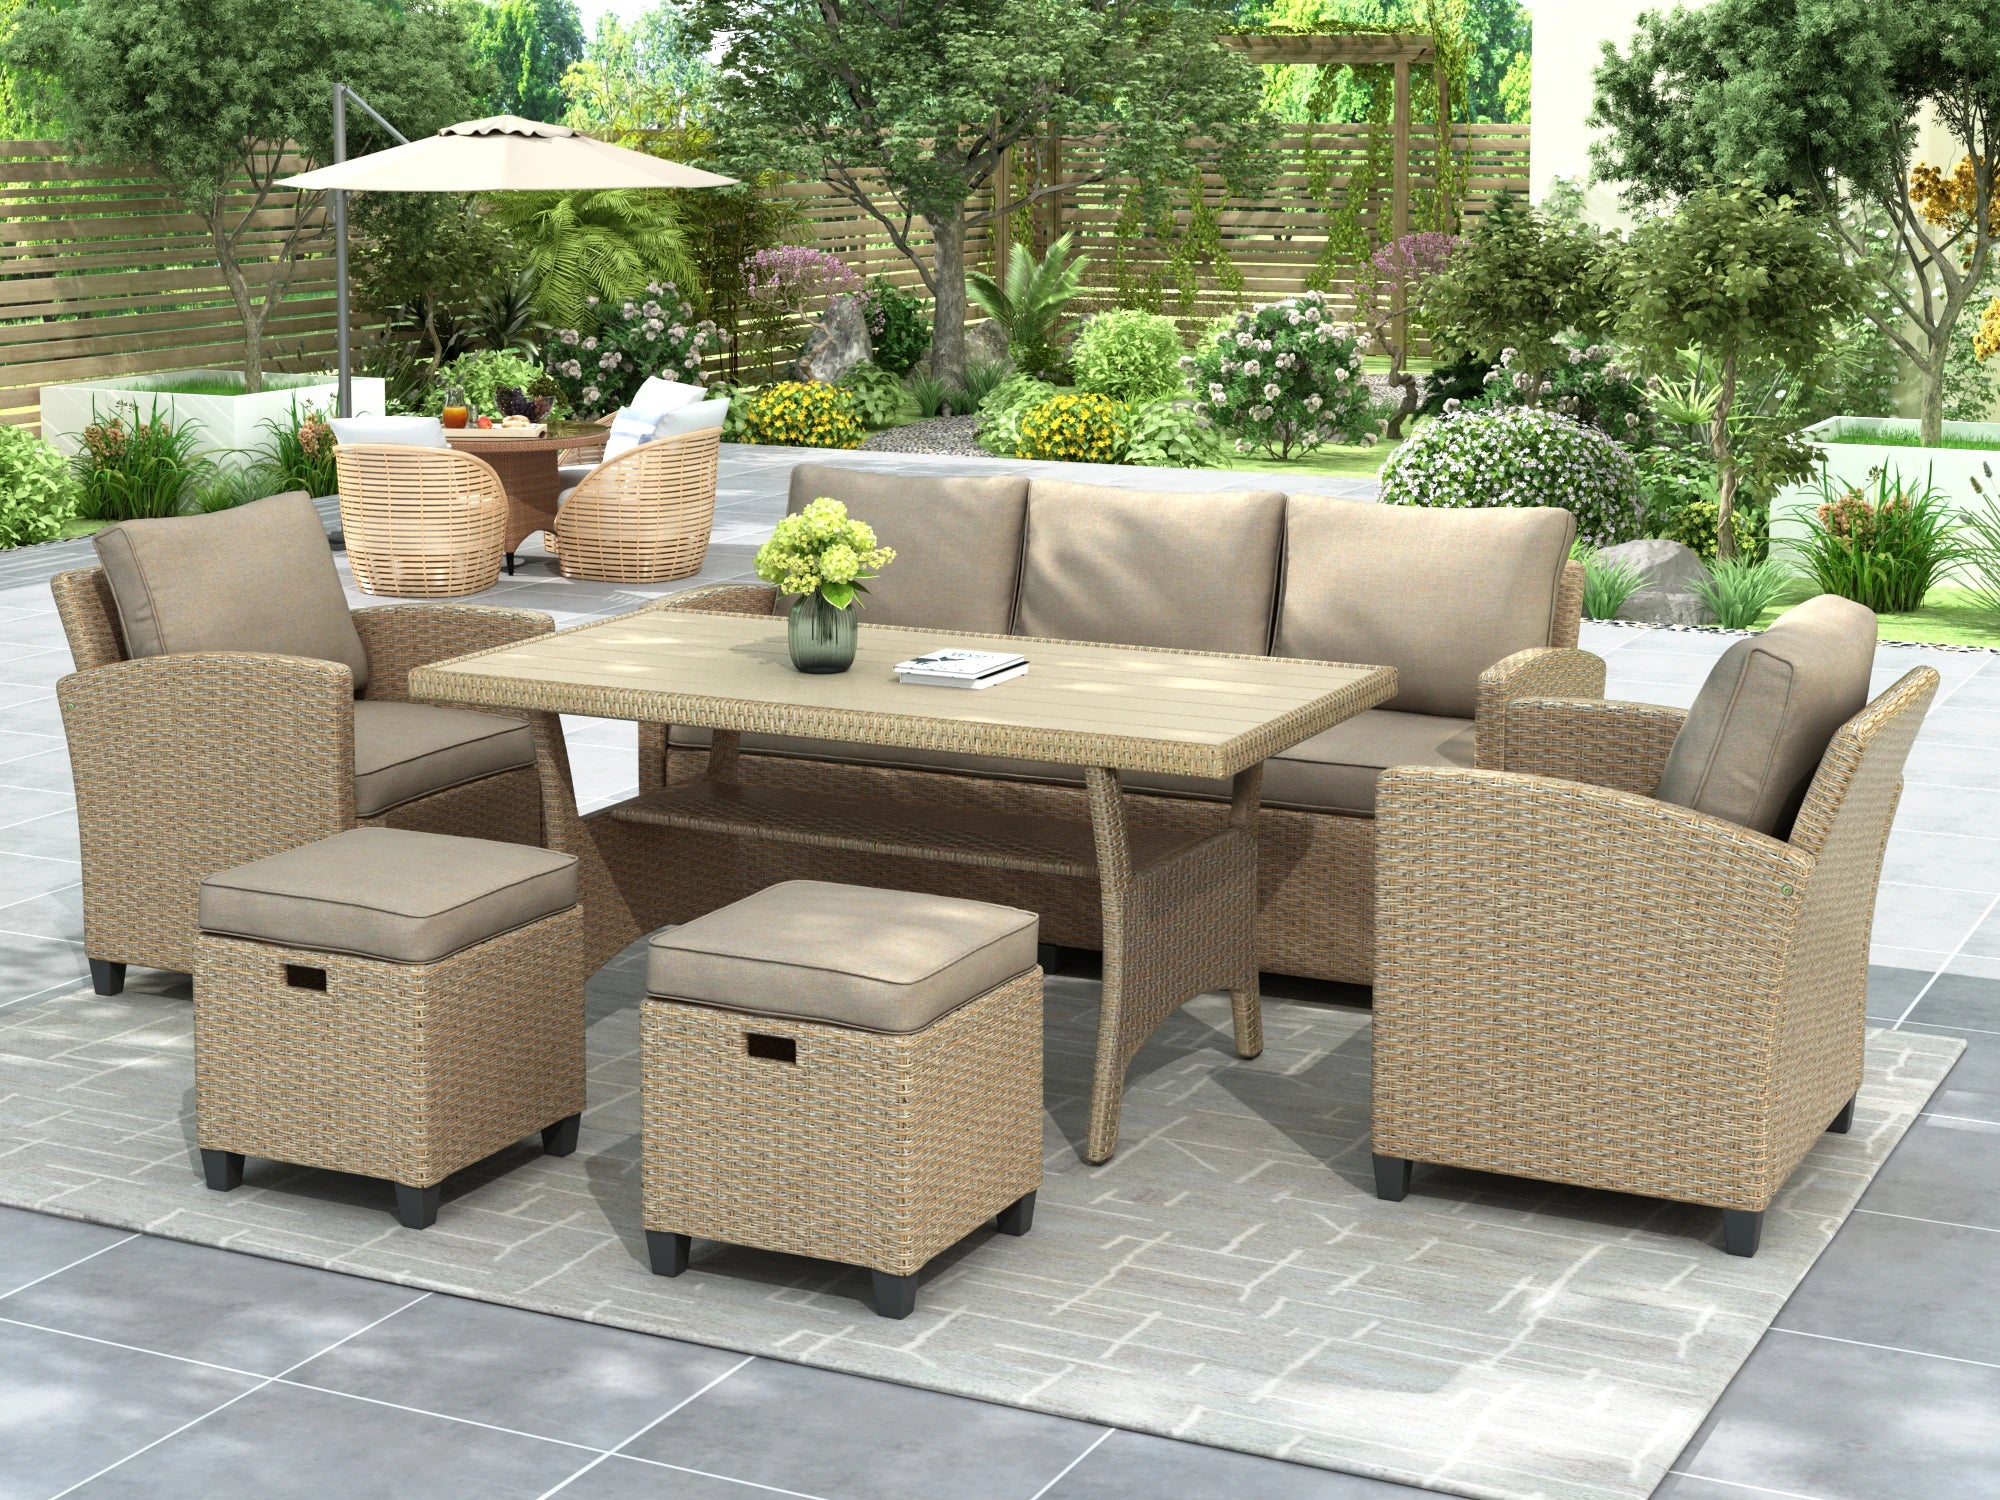 Outdoor Rattan Wicker Furniture Set